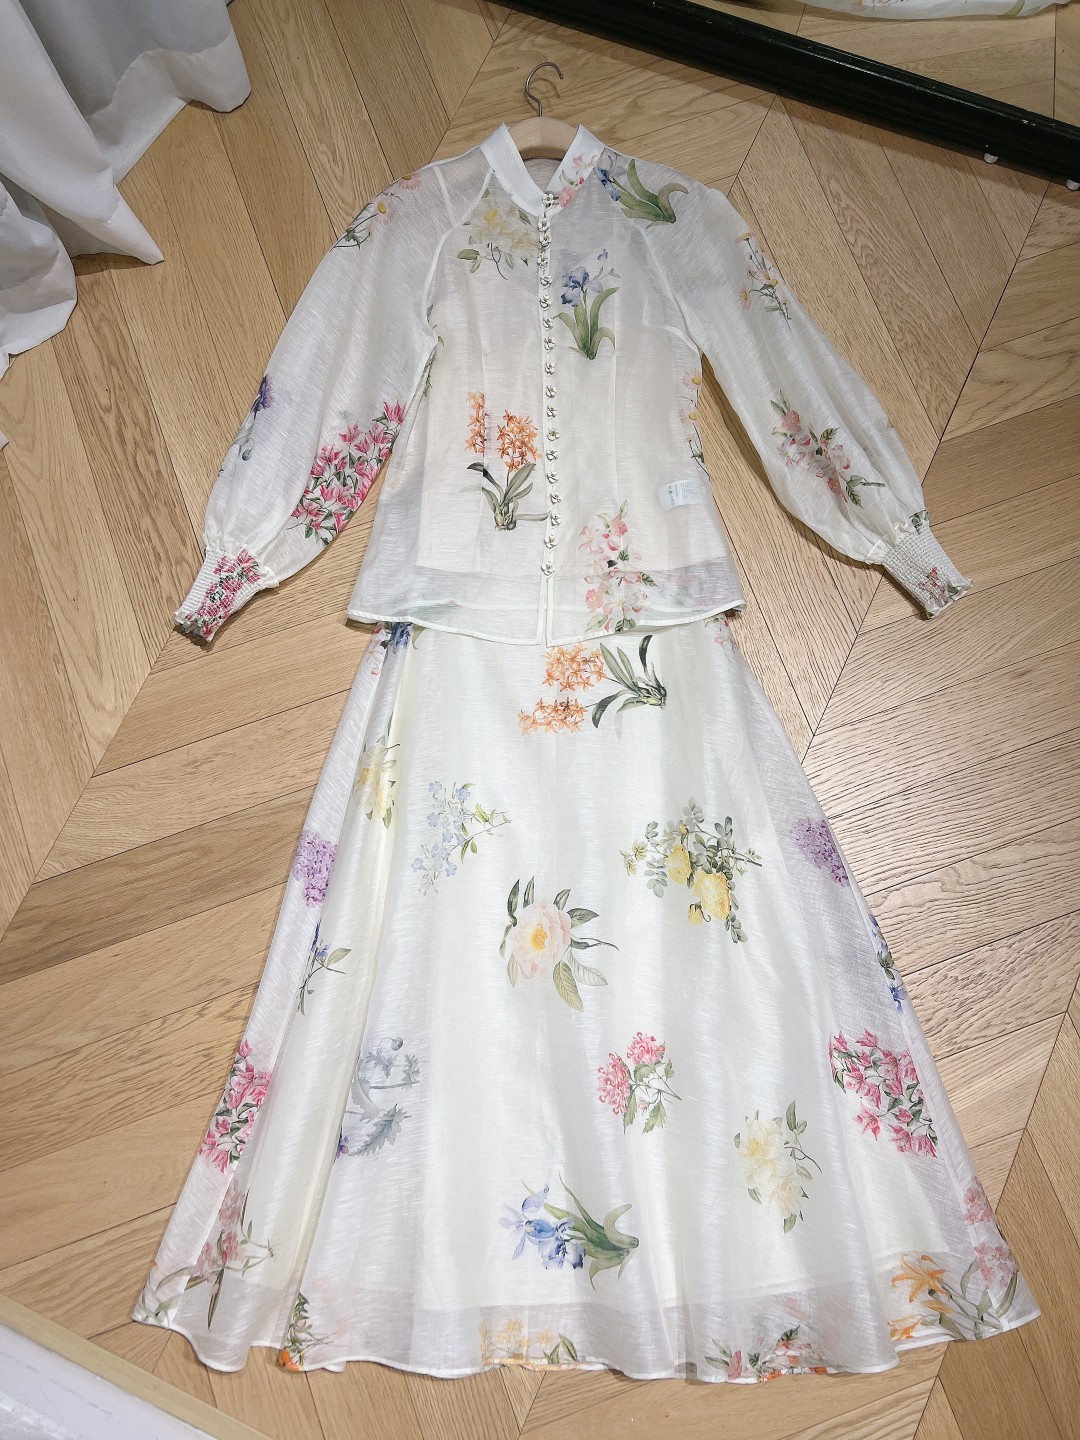 澳洲设计师品牌Zimmerman*n新品丝麻料质地材质真丝网纱半身裙裙身上饰有淡淡的高雅花卉印花棉布内里